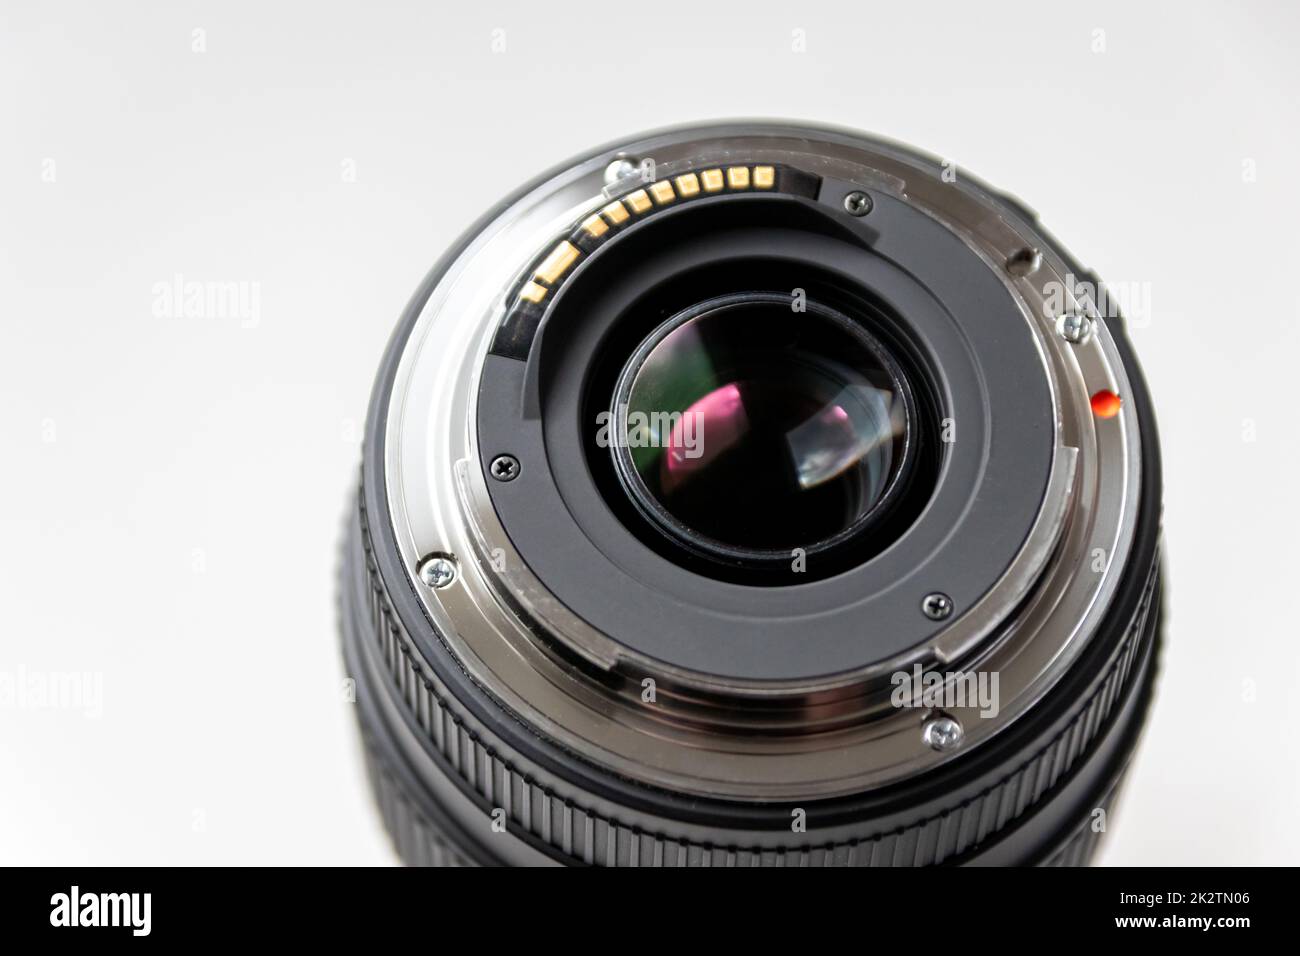 Rückseite eines objektivs einer dslr-Kamera für professionelle Fotografie mit Details der Kamerahalterung in Makroansicht und wunderschönen Objektivdetails für optische Präzision bei Porträtaufnahmen Stockfoto